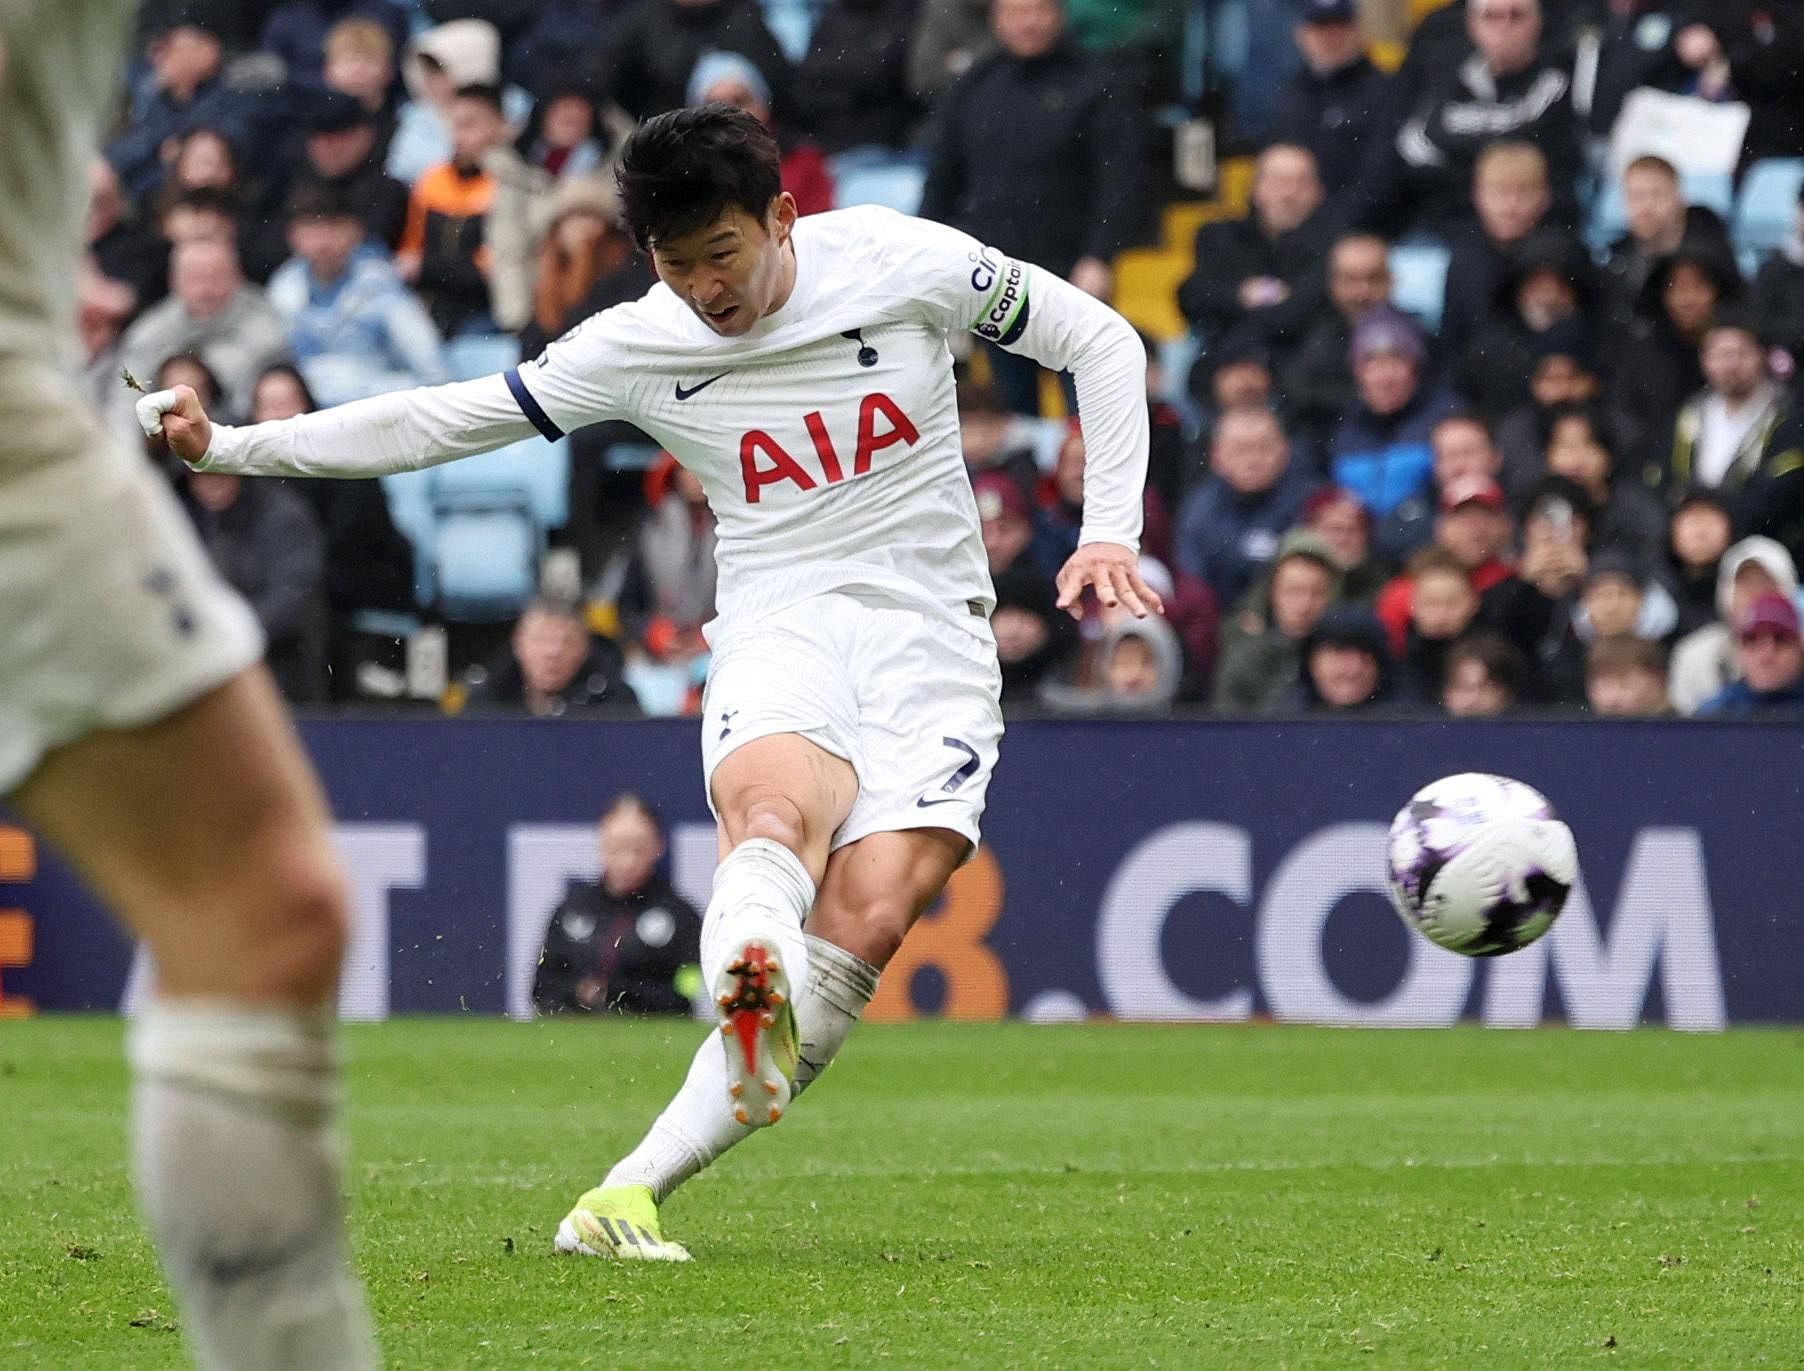 Super Son-day for Tottenham Hotspur in 4-0 thrashing of Aston Villa